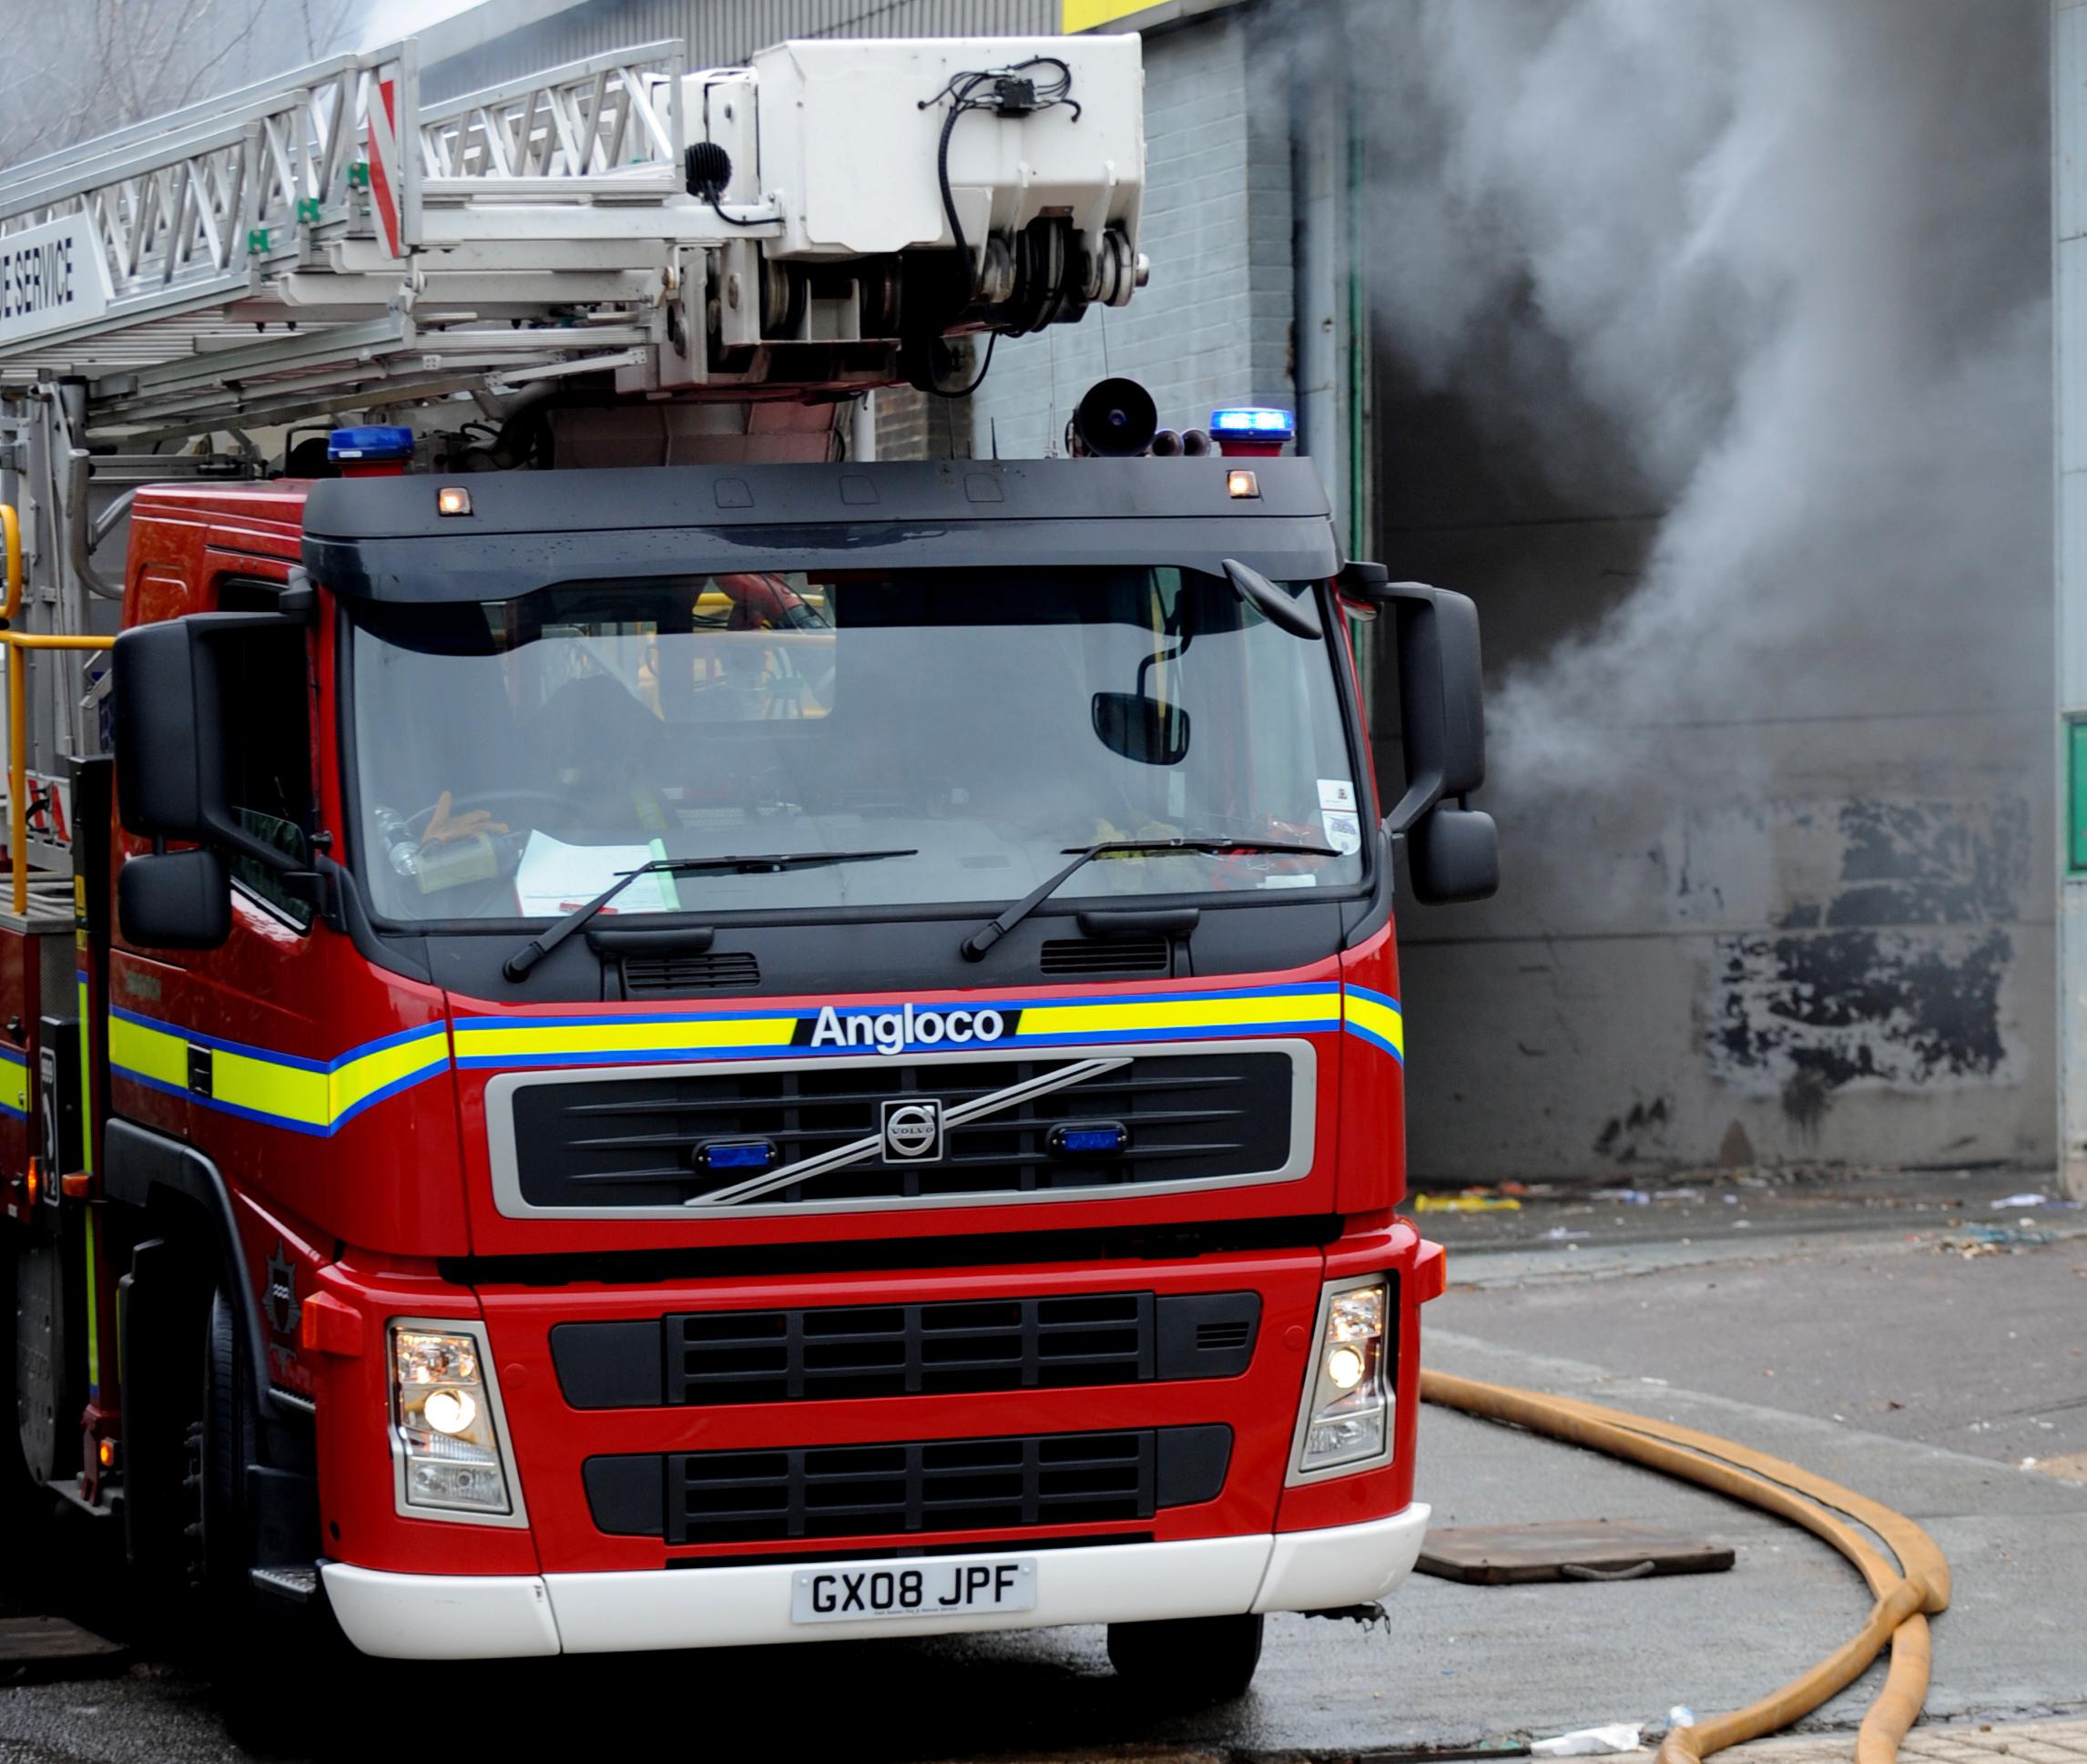 Six fire engines battle fire at boarding school